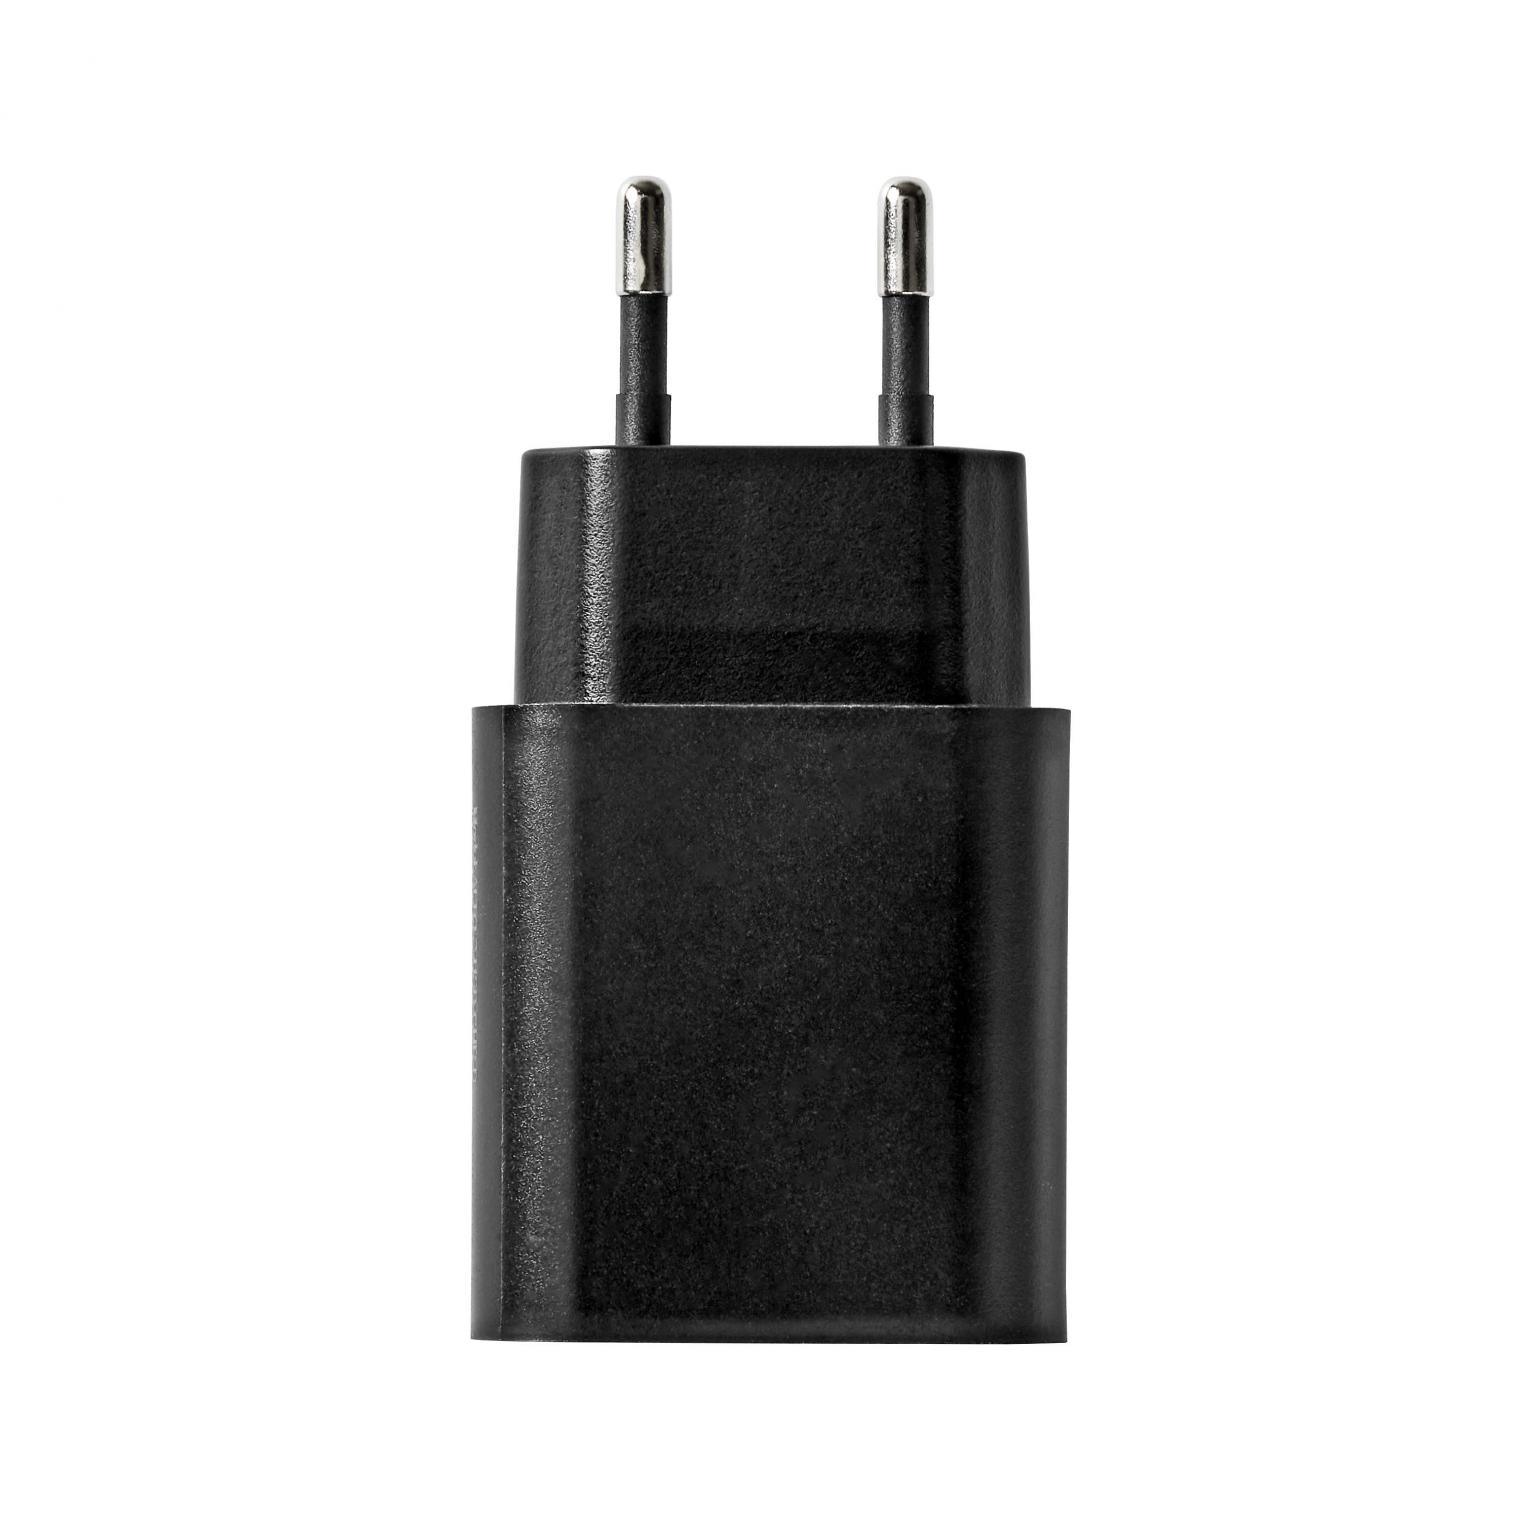 USB Ladegerät - Allteq